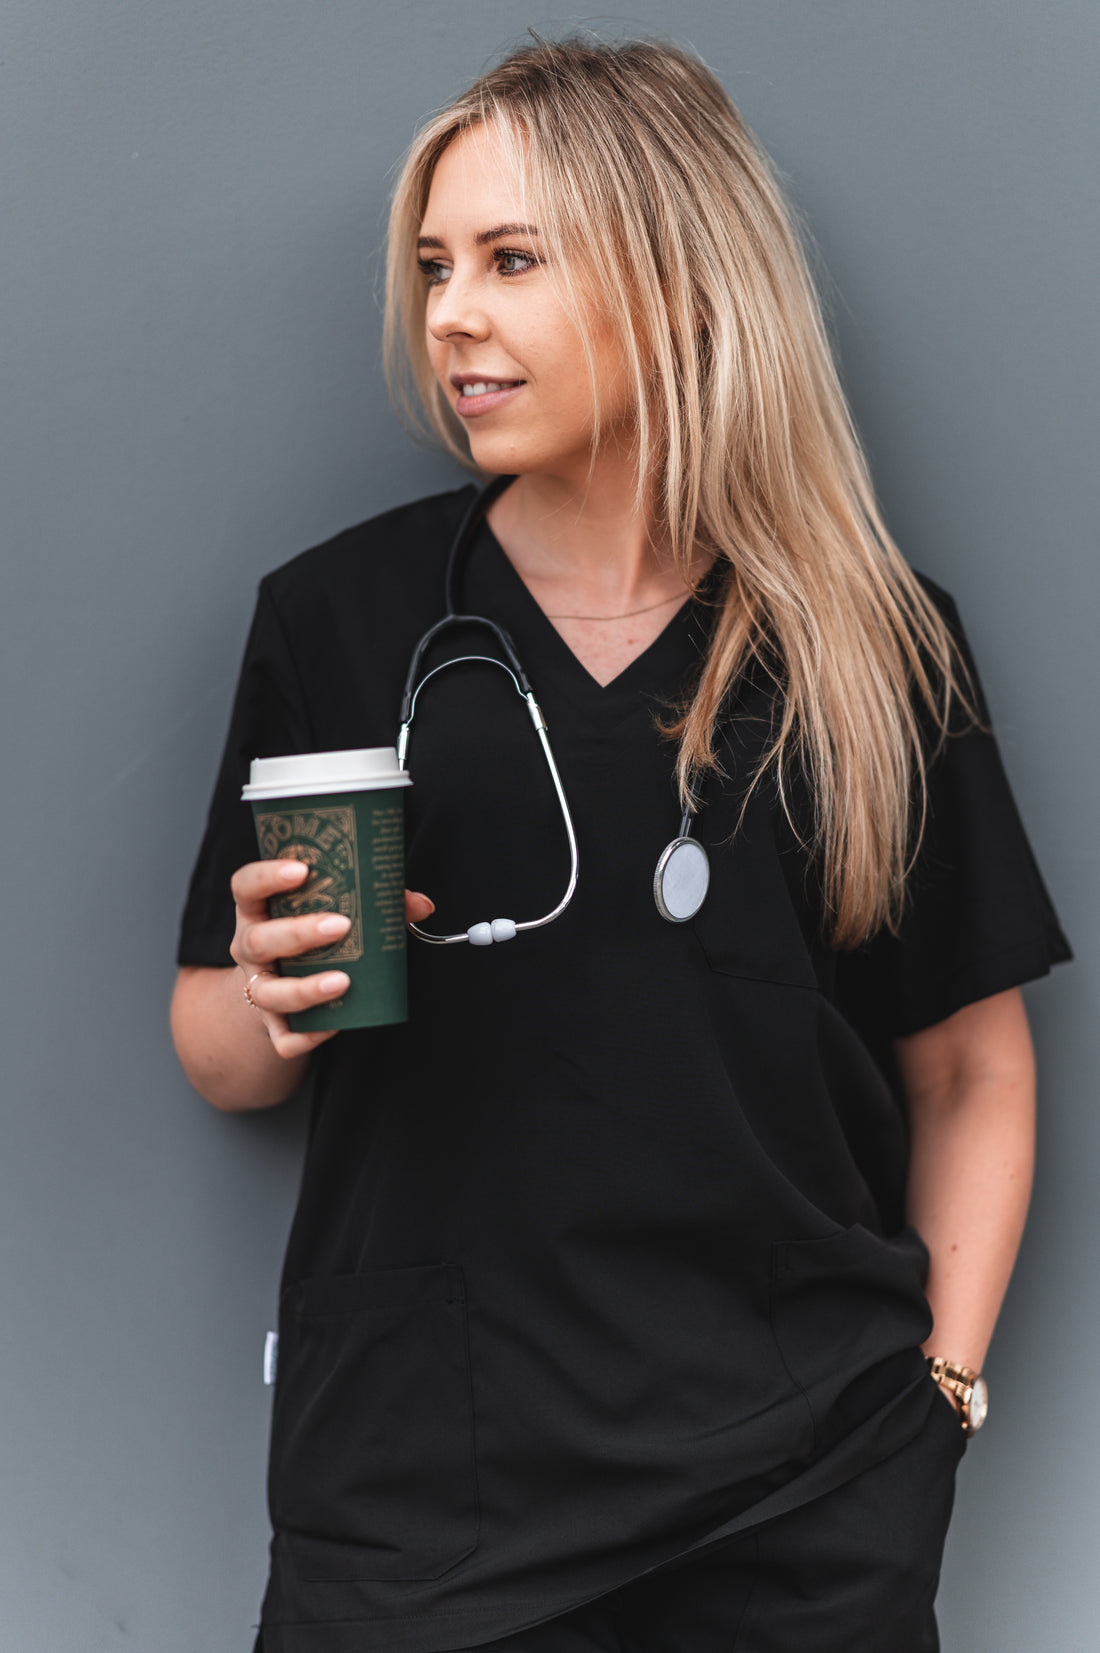 Can Nurses Wear Black Scrubs in Australia?